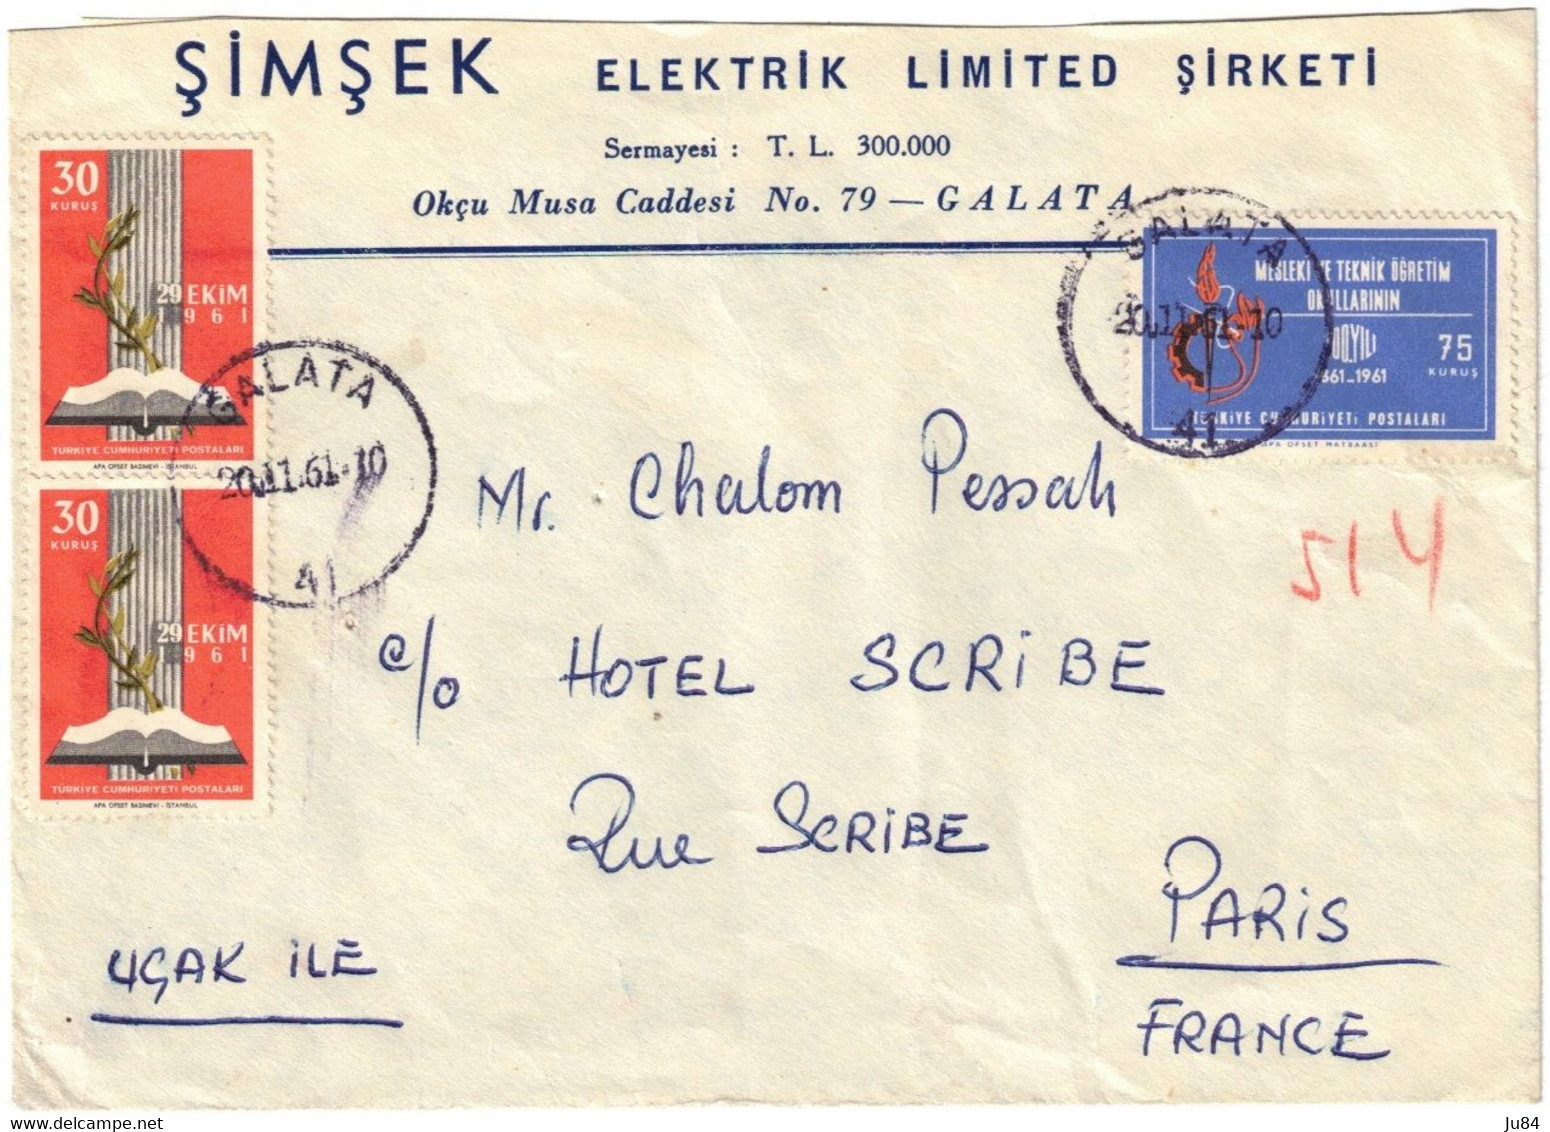 Turquie - Galata - Simsek Elektrik Limited Sirketi - Lettre Pour Hôtel Scribe Paris (France) - 20 Novembre 1961 - Lettres & Documents